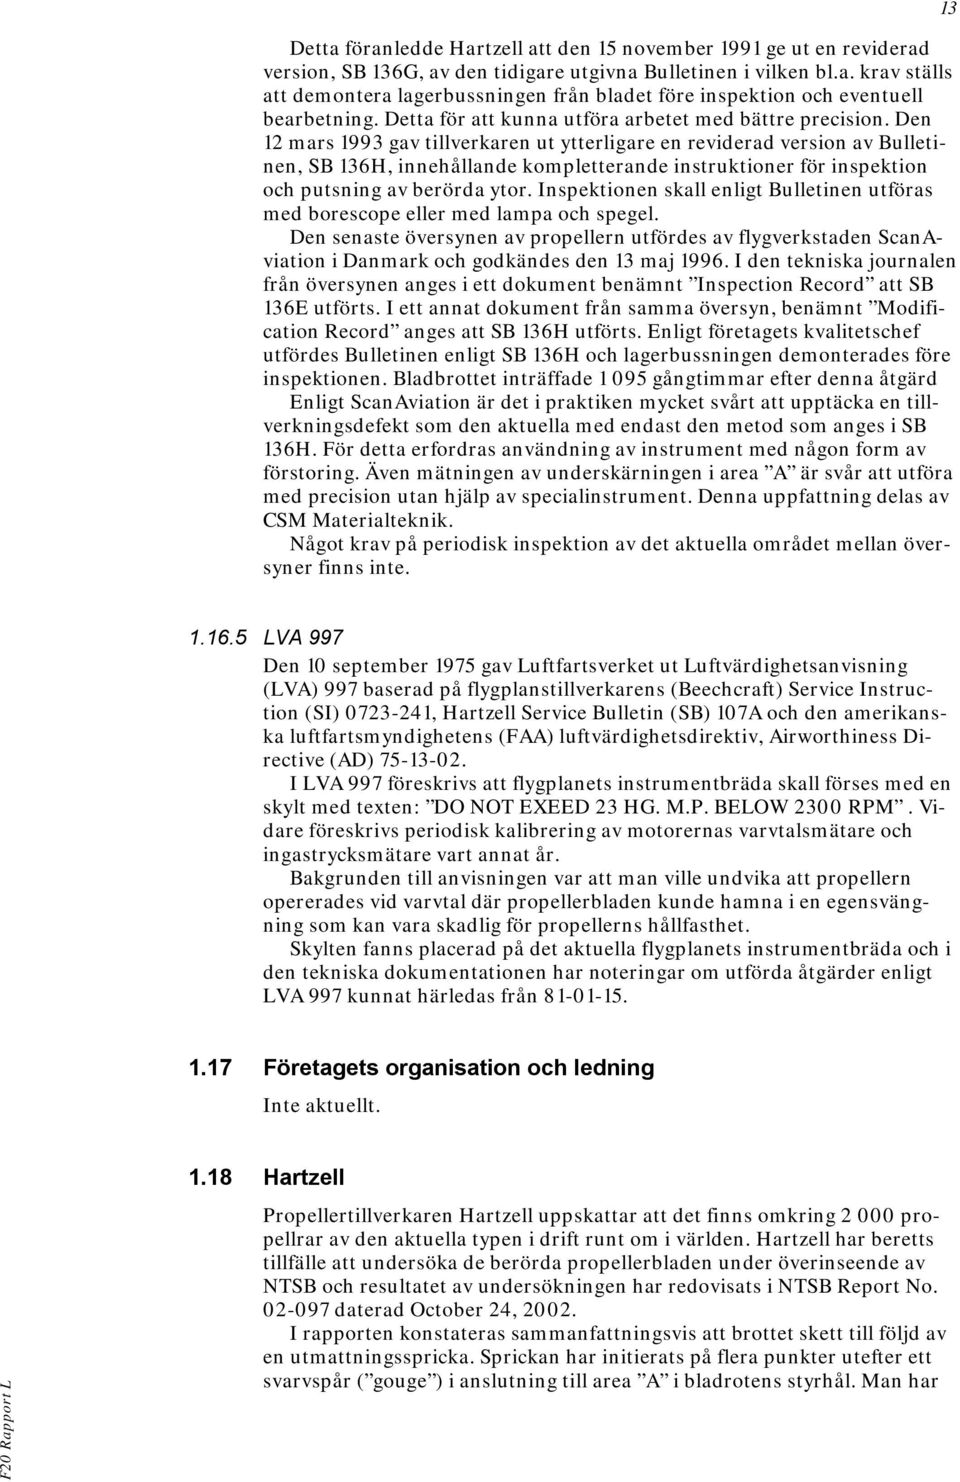 Den 12 mars 1993 gav tillverkaren ut ytterligare en reviderad version av Bulletinen, SB 136H, innehållande kompletterande instruktioner för inspektion och putsning av berörda ytor.